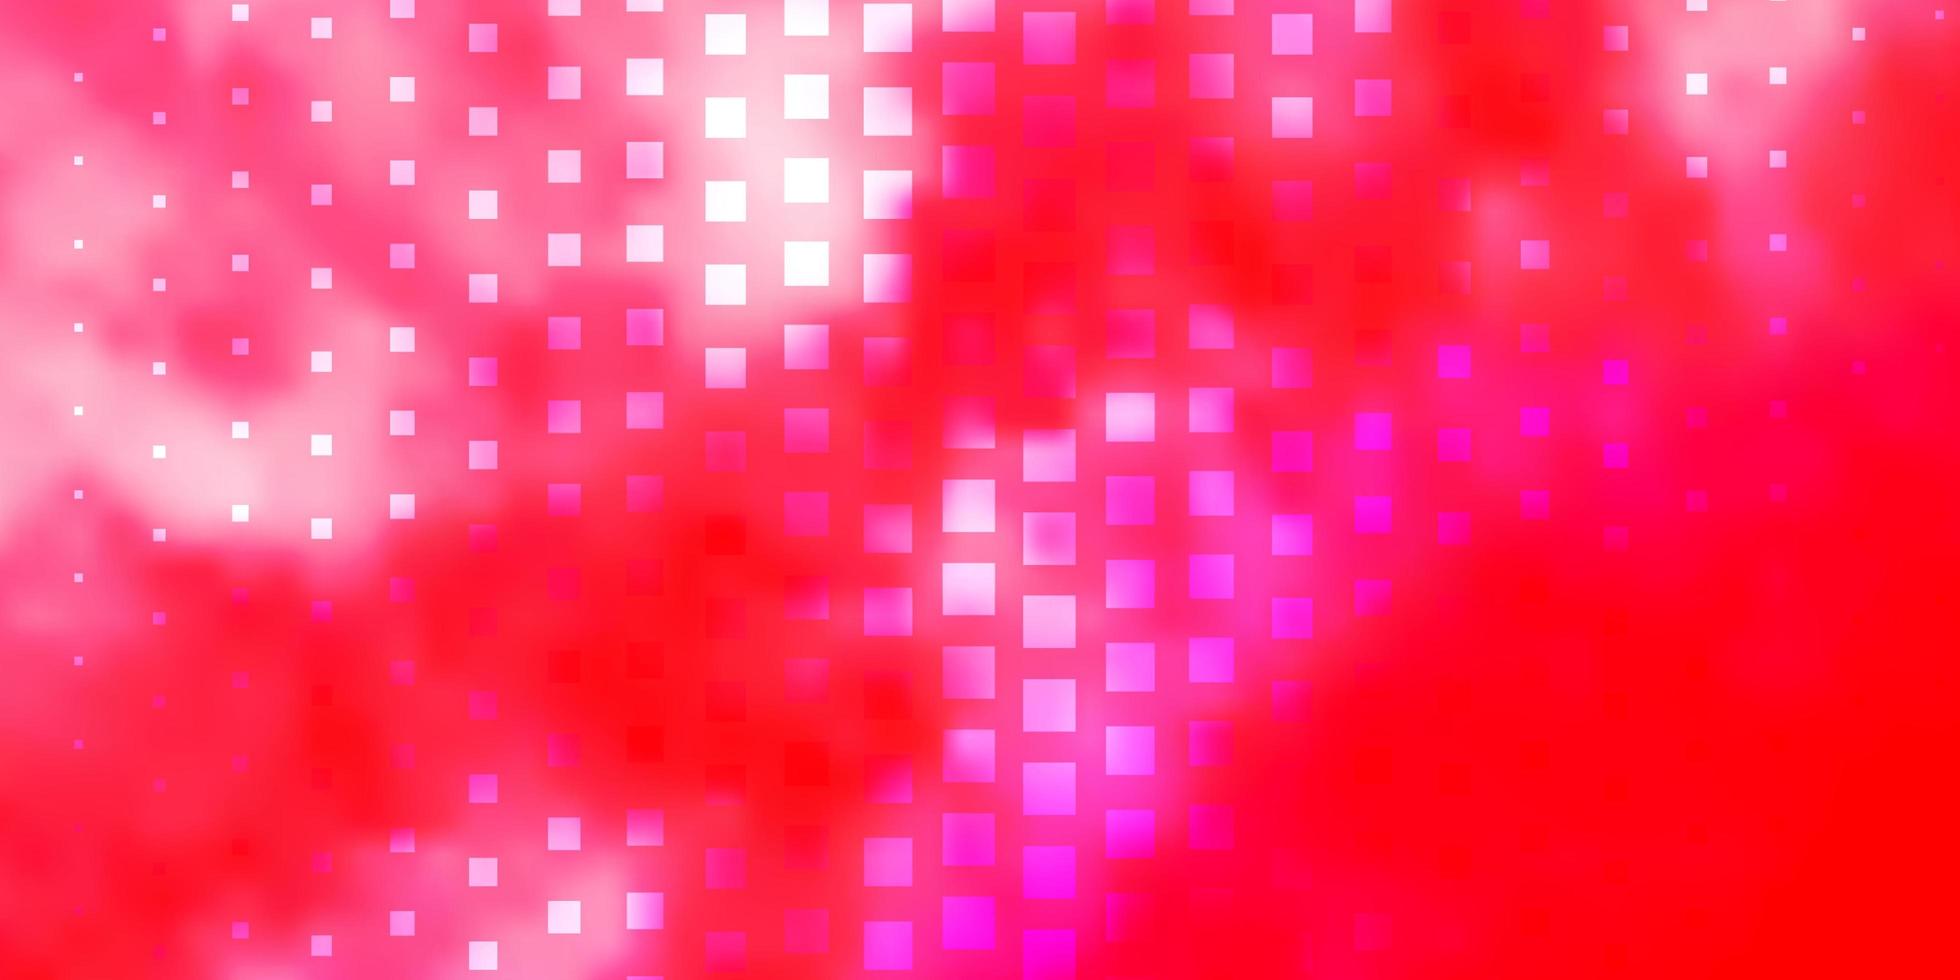 ljusrosa vektor bakgrund med rektanglar.